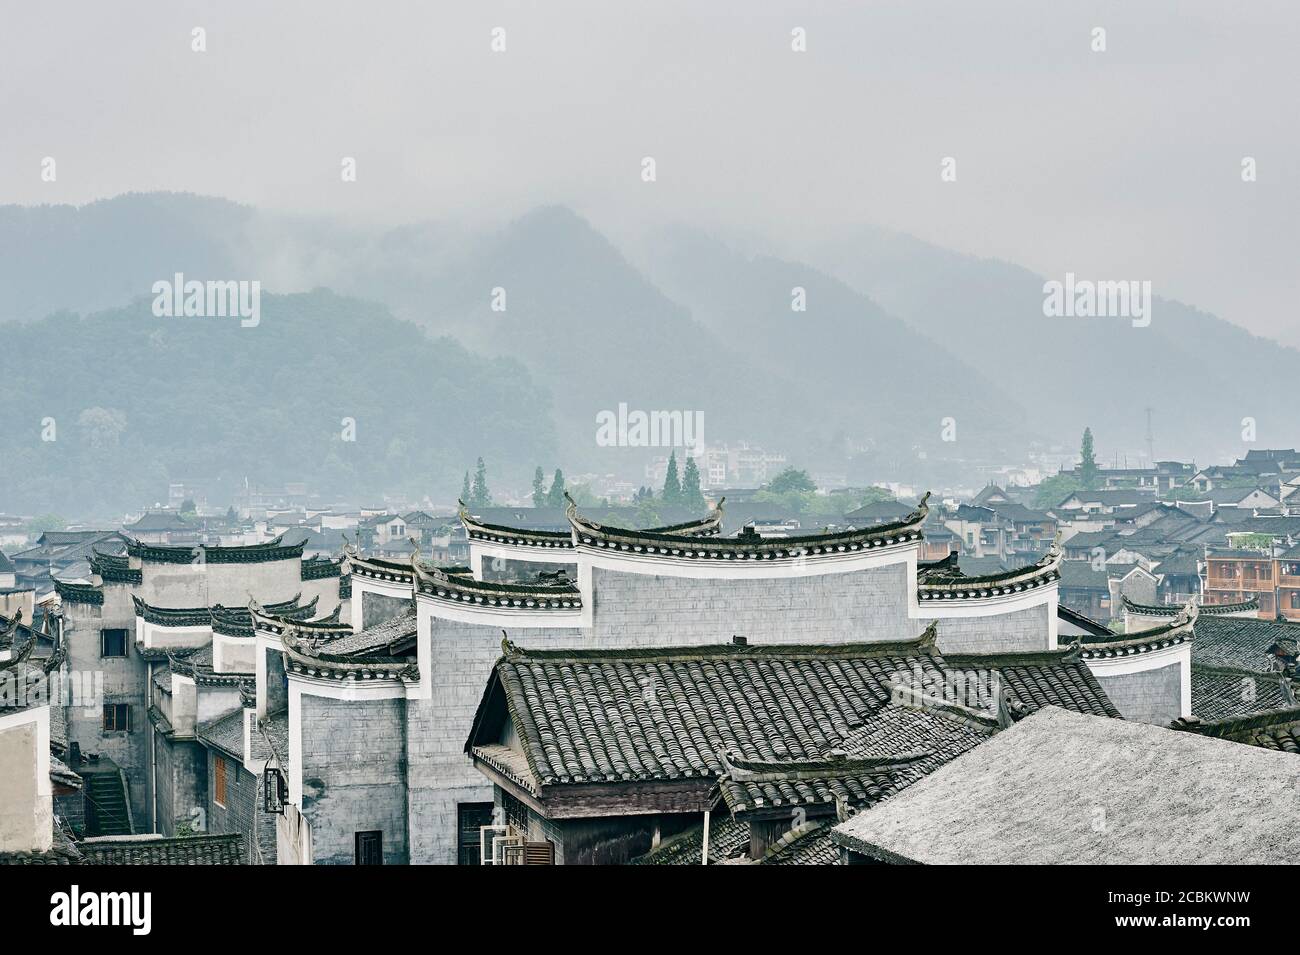 Rooftops, Fenghuang, Hunan, China Stock Photo